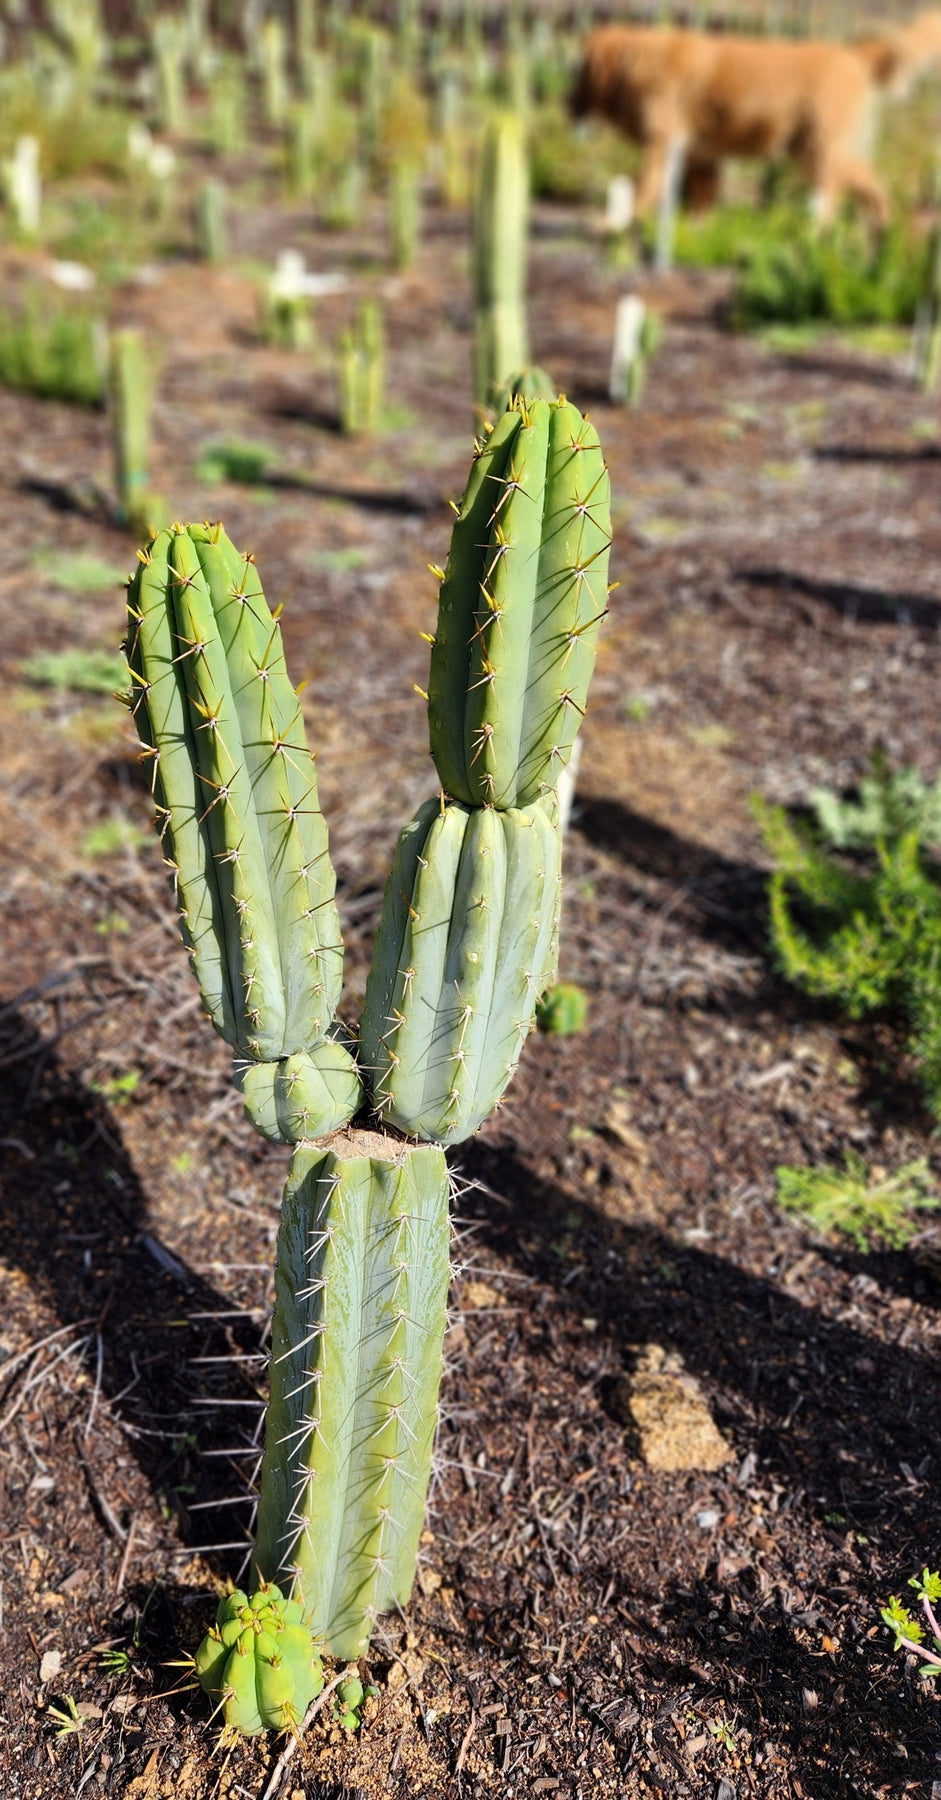 #EC97 EXACT Trichocereus Peruvianus "Lumberjack" Cactus Cutting 7-8"-Cactus - Large - Exact-The Succulent Source